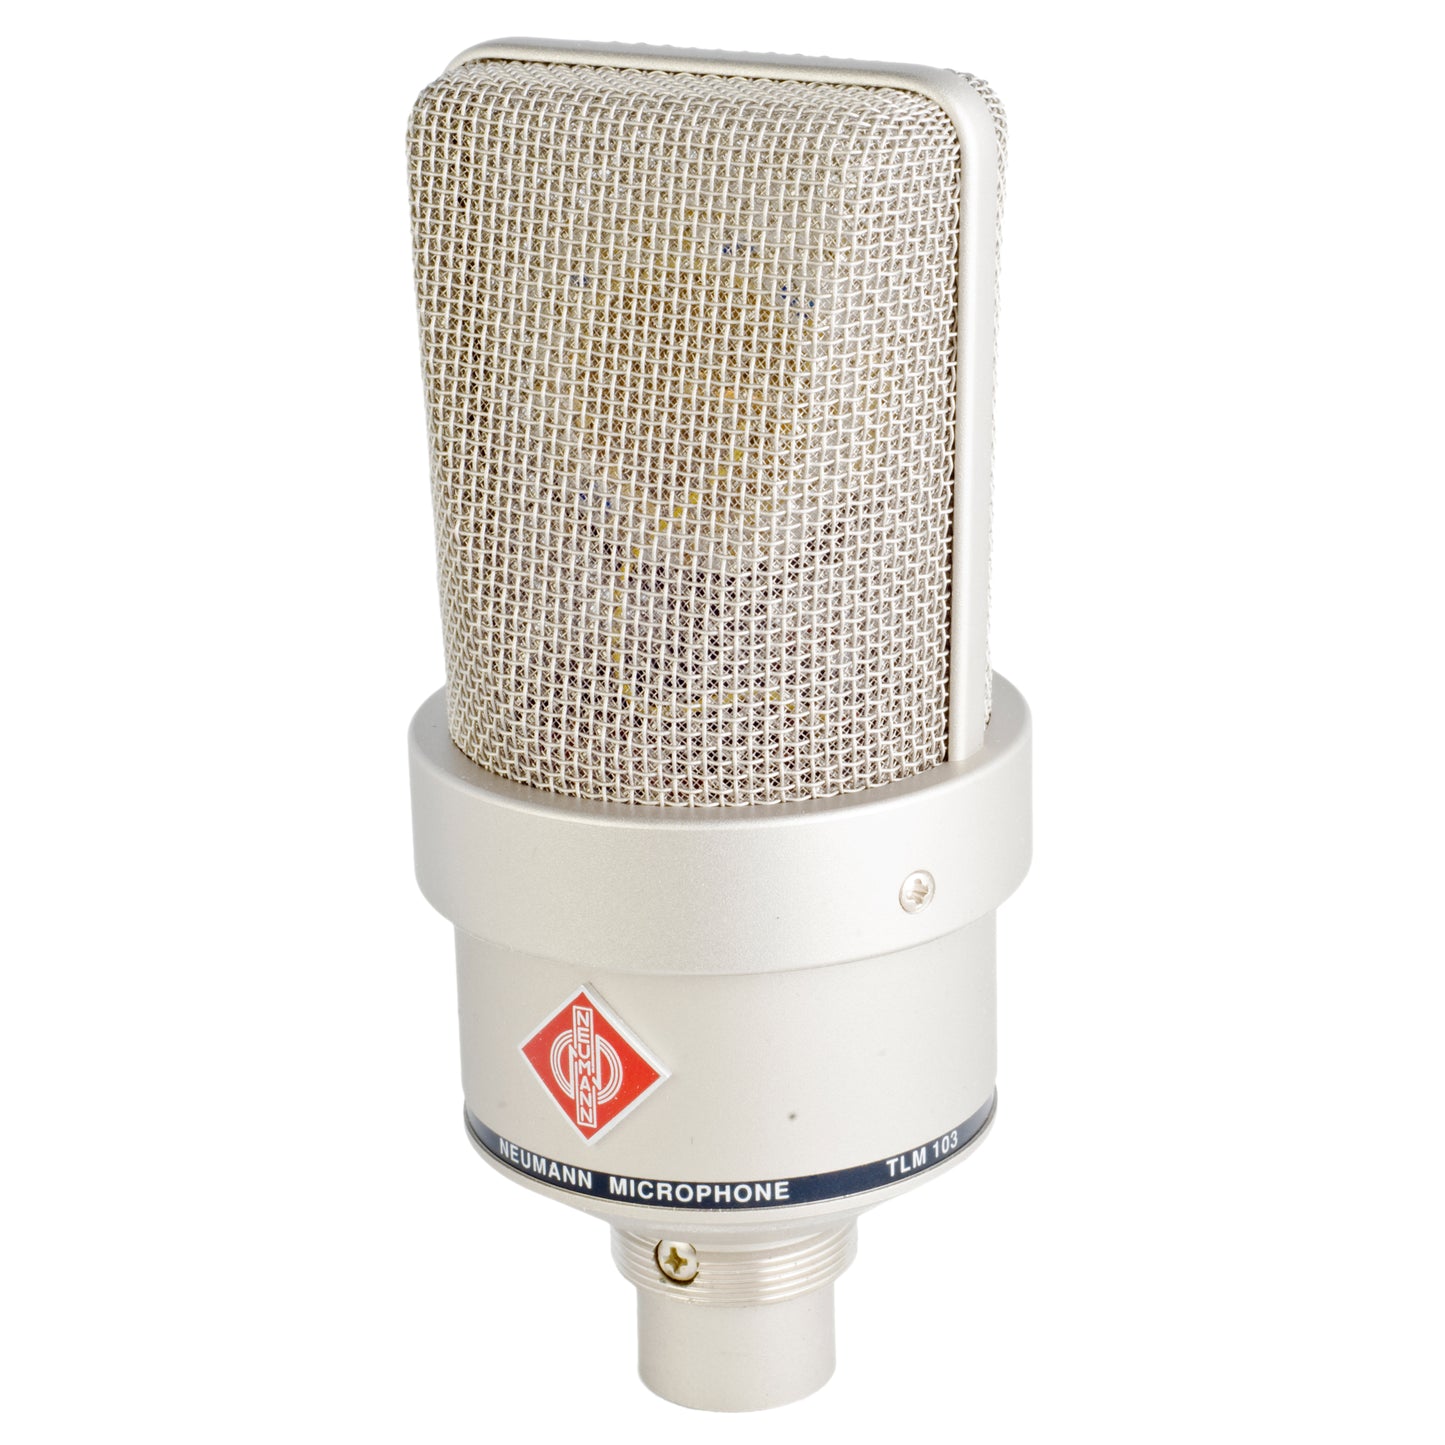 Neumann TLM 103 Condenser Microphone, Nickel